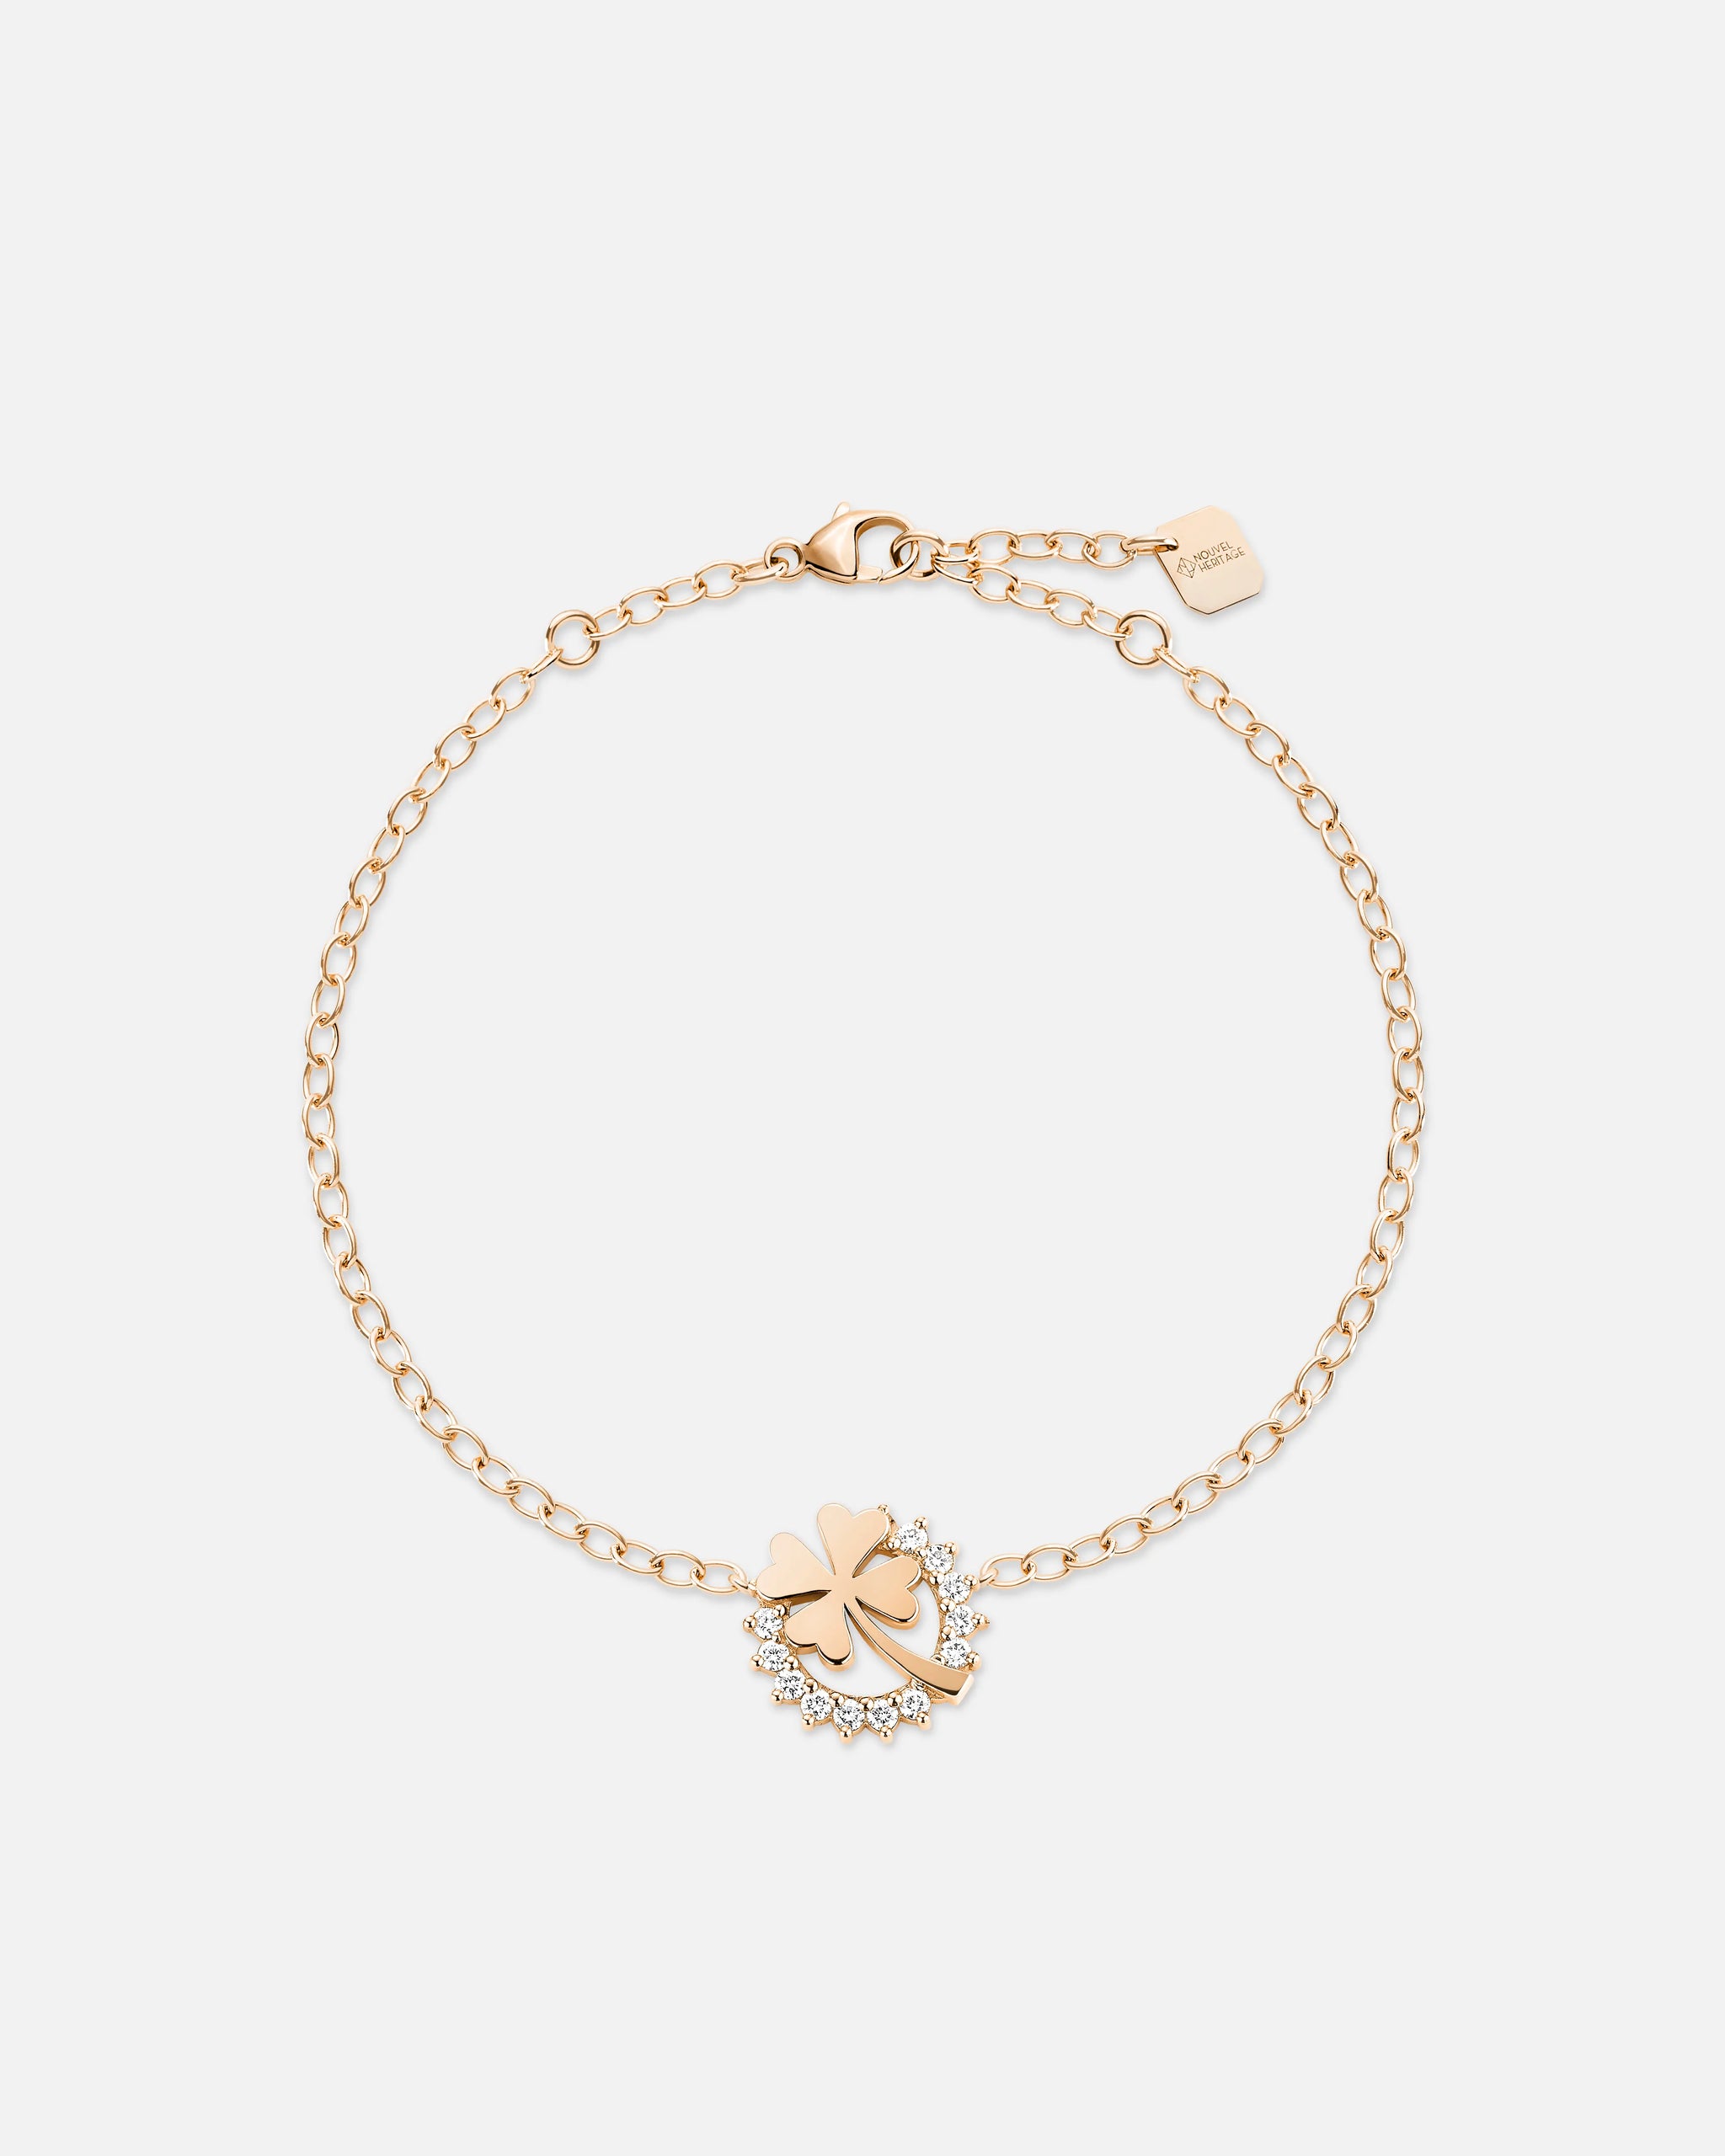 Medium Luck Bracelet in Rose Gold - 1 - Nouvel Heritage